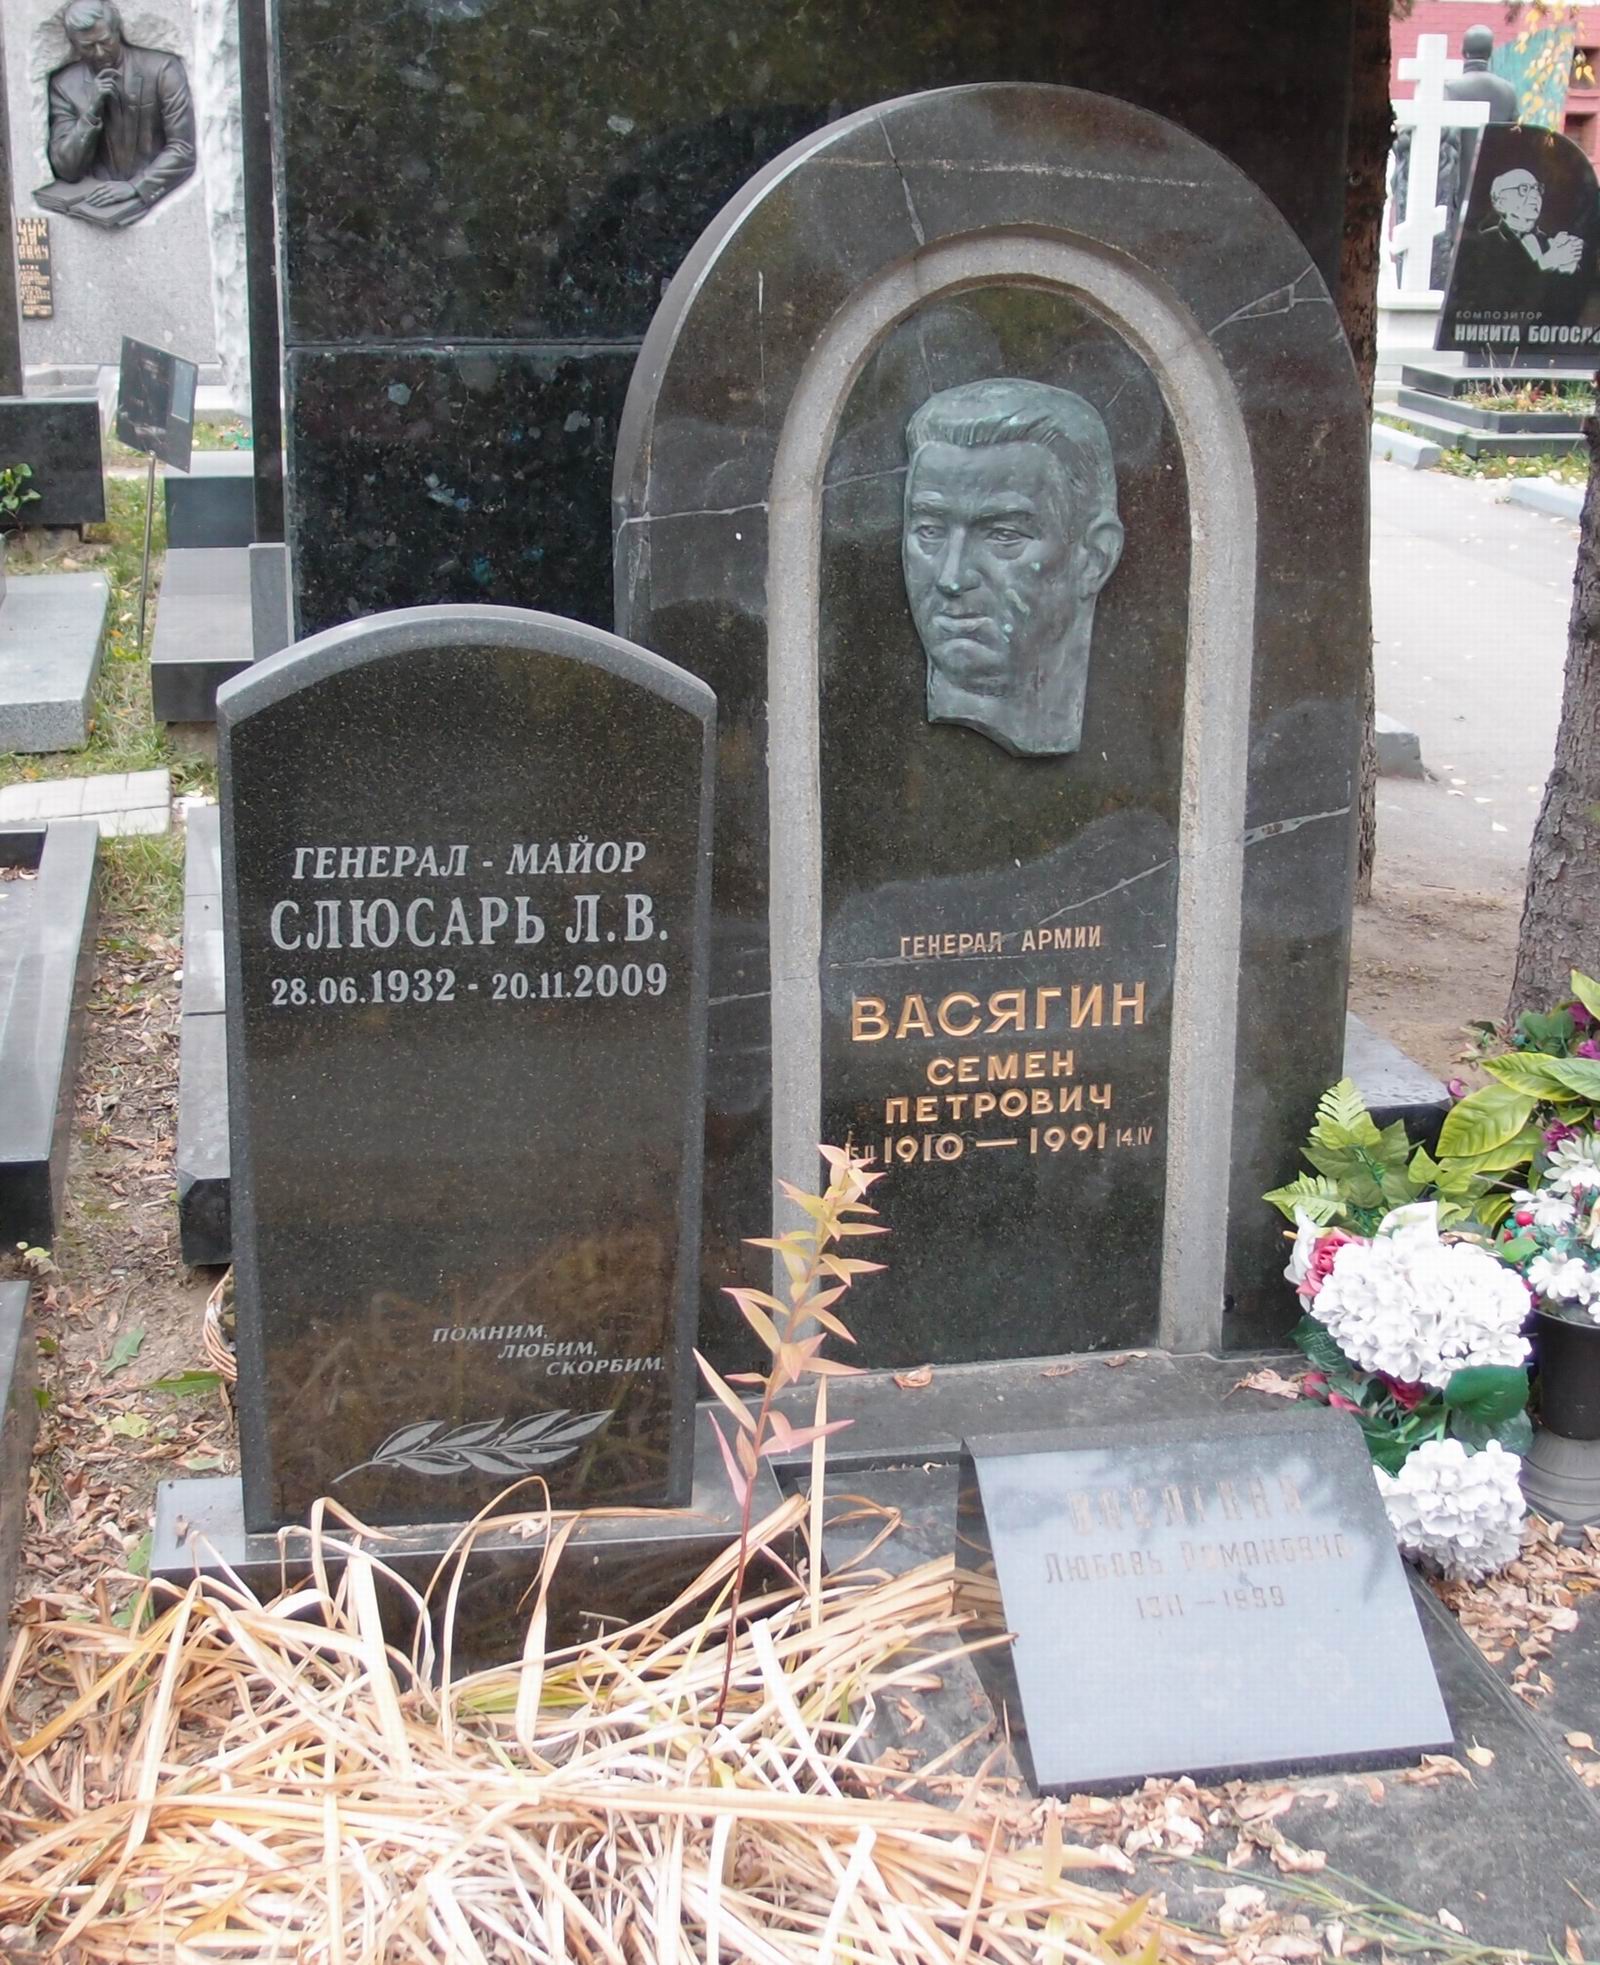 Памятник на могиле Васягина С.П. (1910–1991), ск. А.Бельдюшкин, арх. Б.Шехура, на Новодевичьем кладбище (11–3–1).